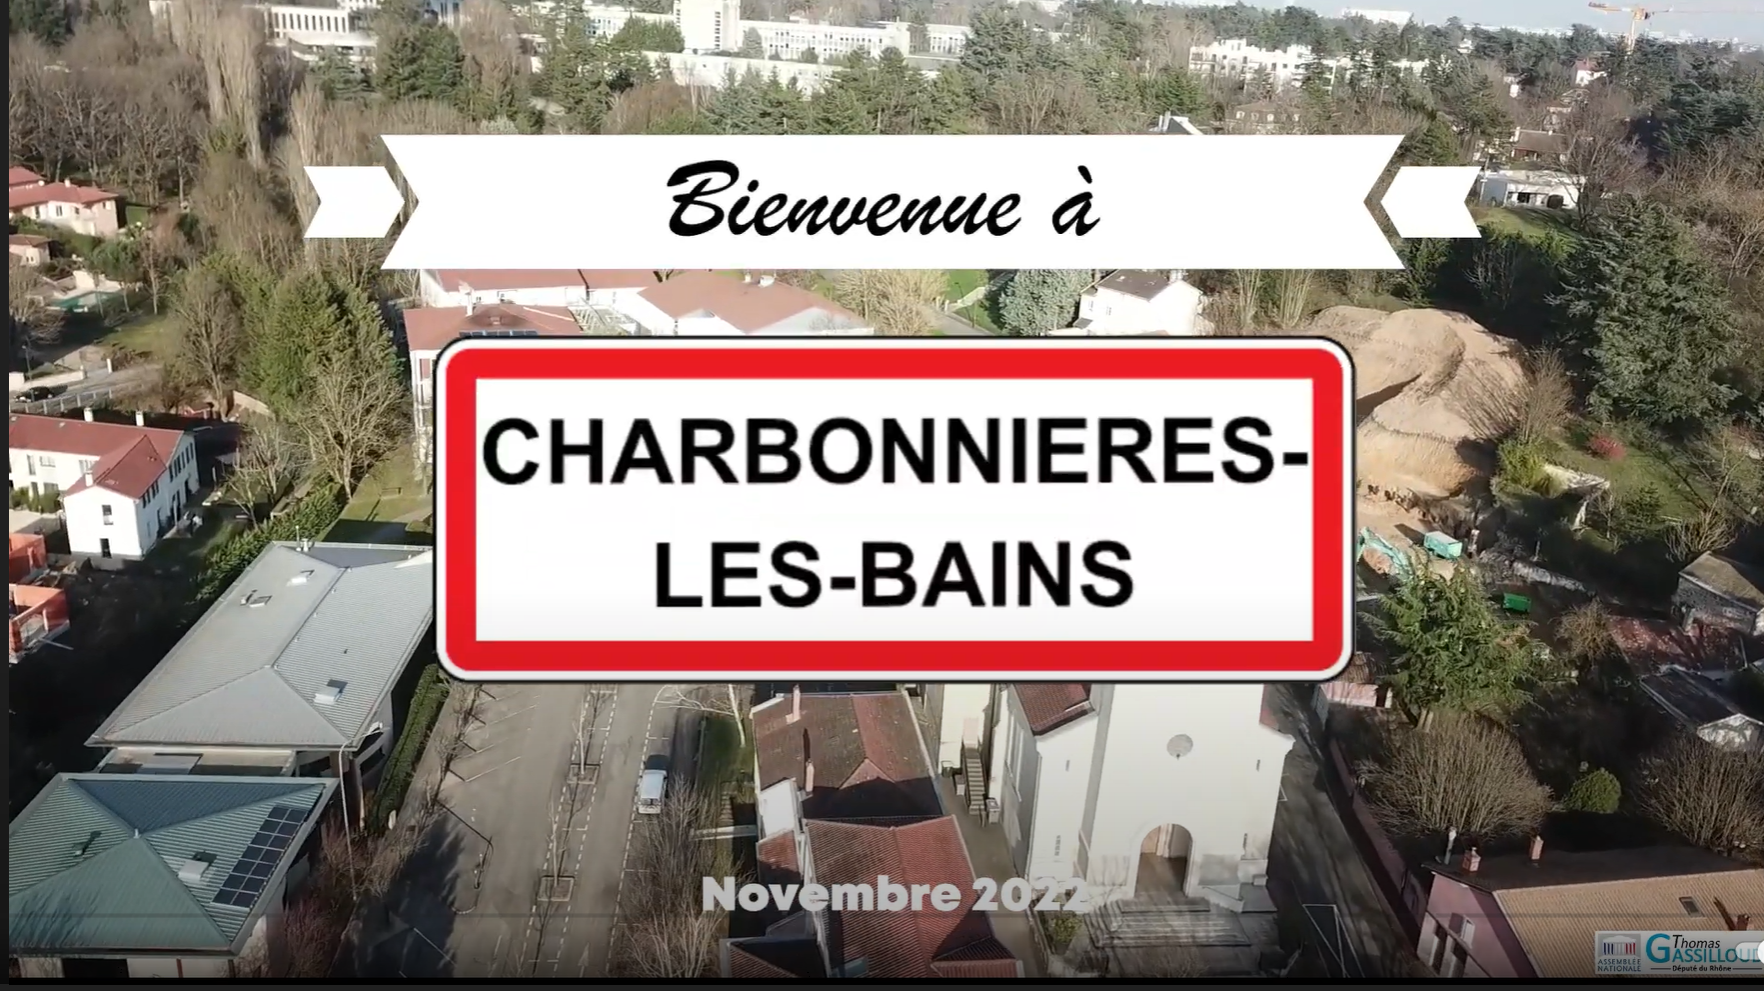 Bienvenue à Charbonnières-les-Bains